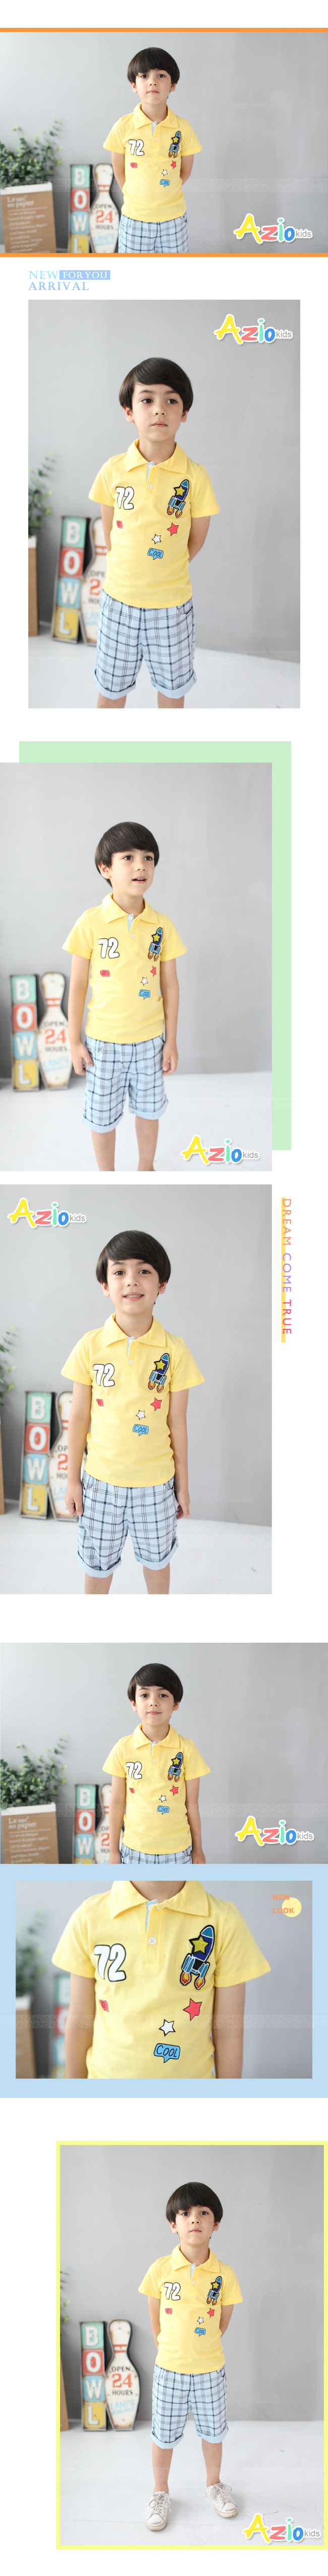 童裝 上衣 火箭星星印花短袖POLO衫(共2色)